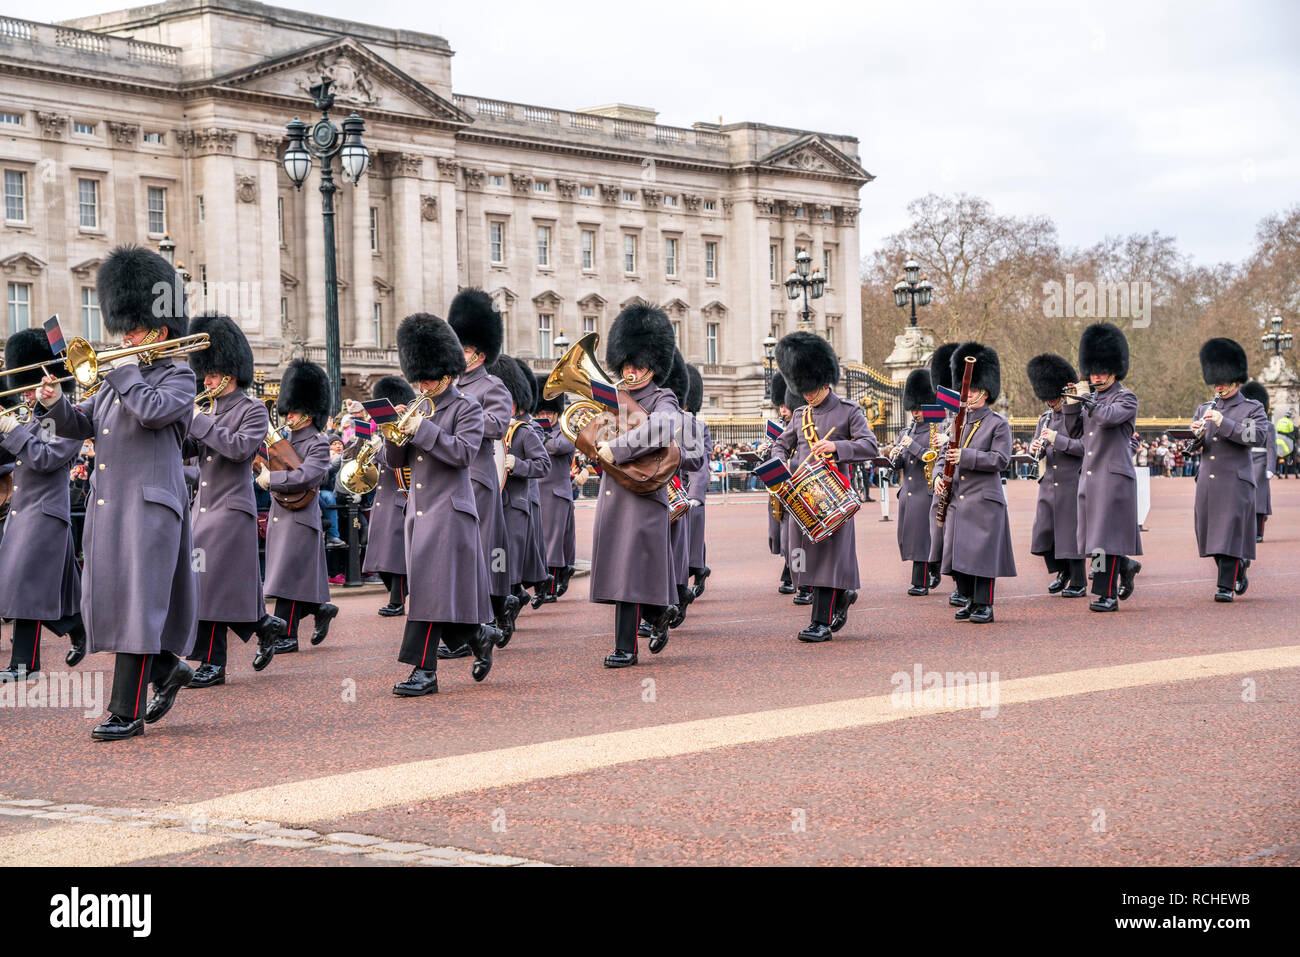 Traditionelle Wachablösung Ändern der Guard vor dem Buckingham Palace, London, Vereinigtes Königreich Großbritannien, Europa | traditionelle Zeremonie Stockfoto